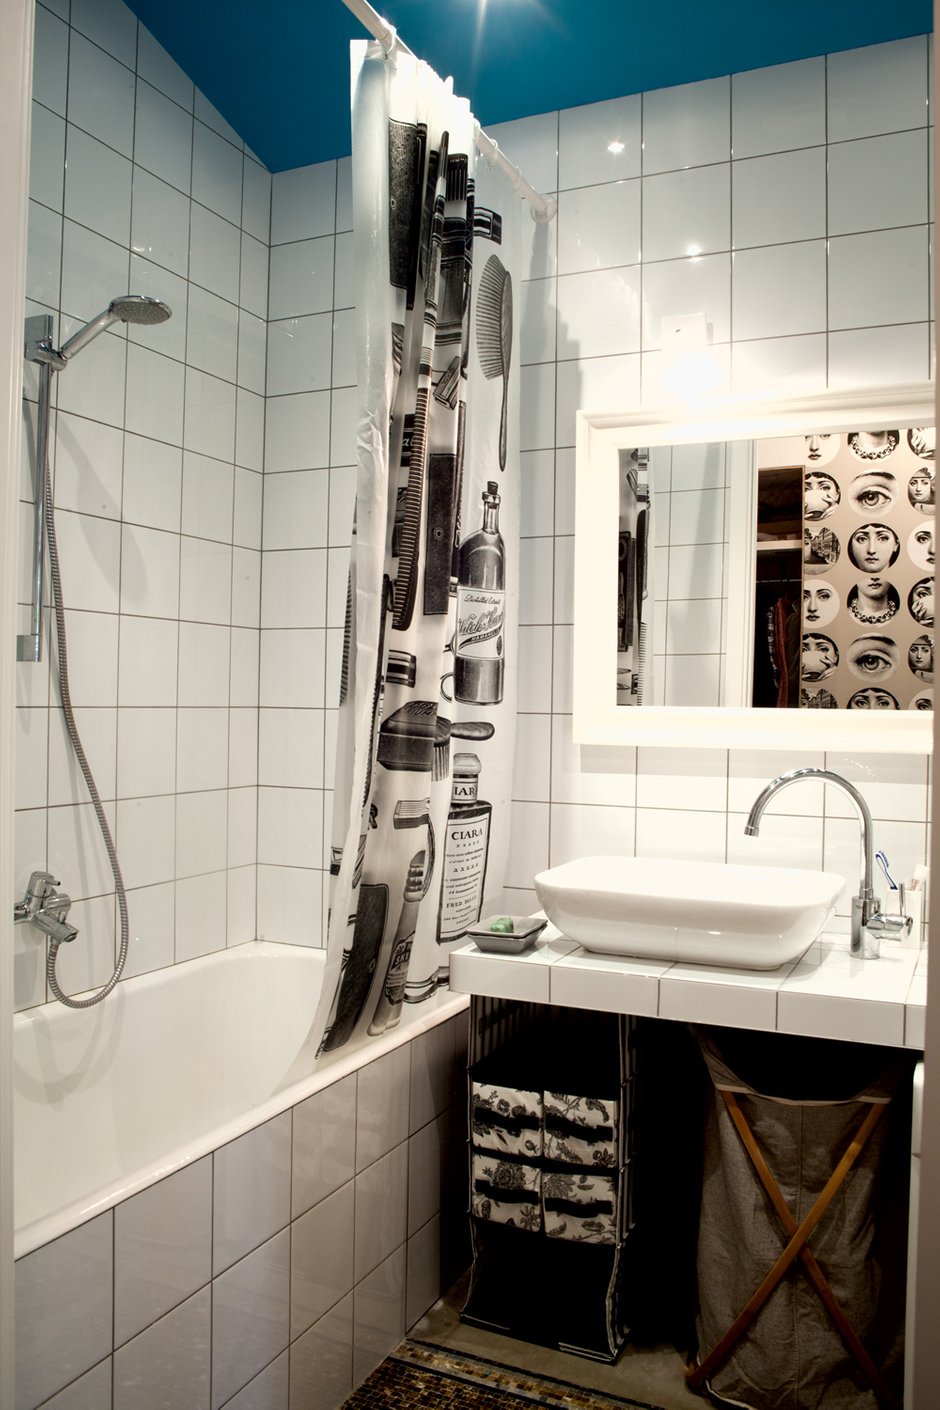 Фотография: Ванная в стиле Современный, Малогабаритная квартира, Квартира, Дома и квартиры – фото на INMYROOM